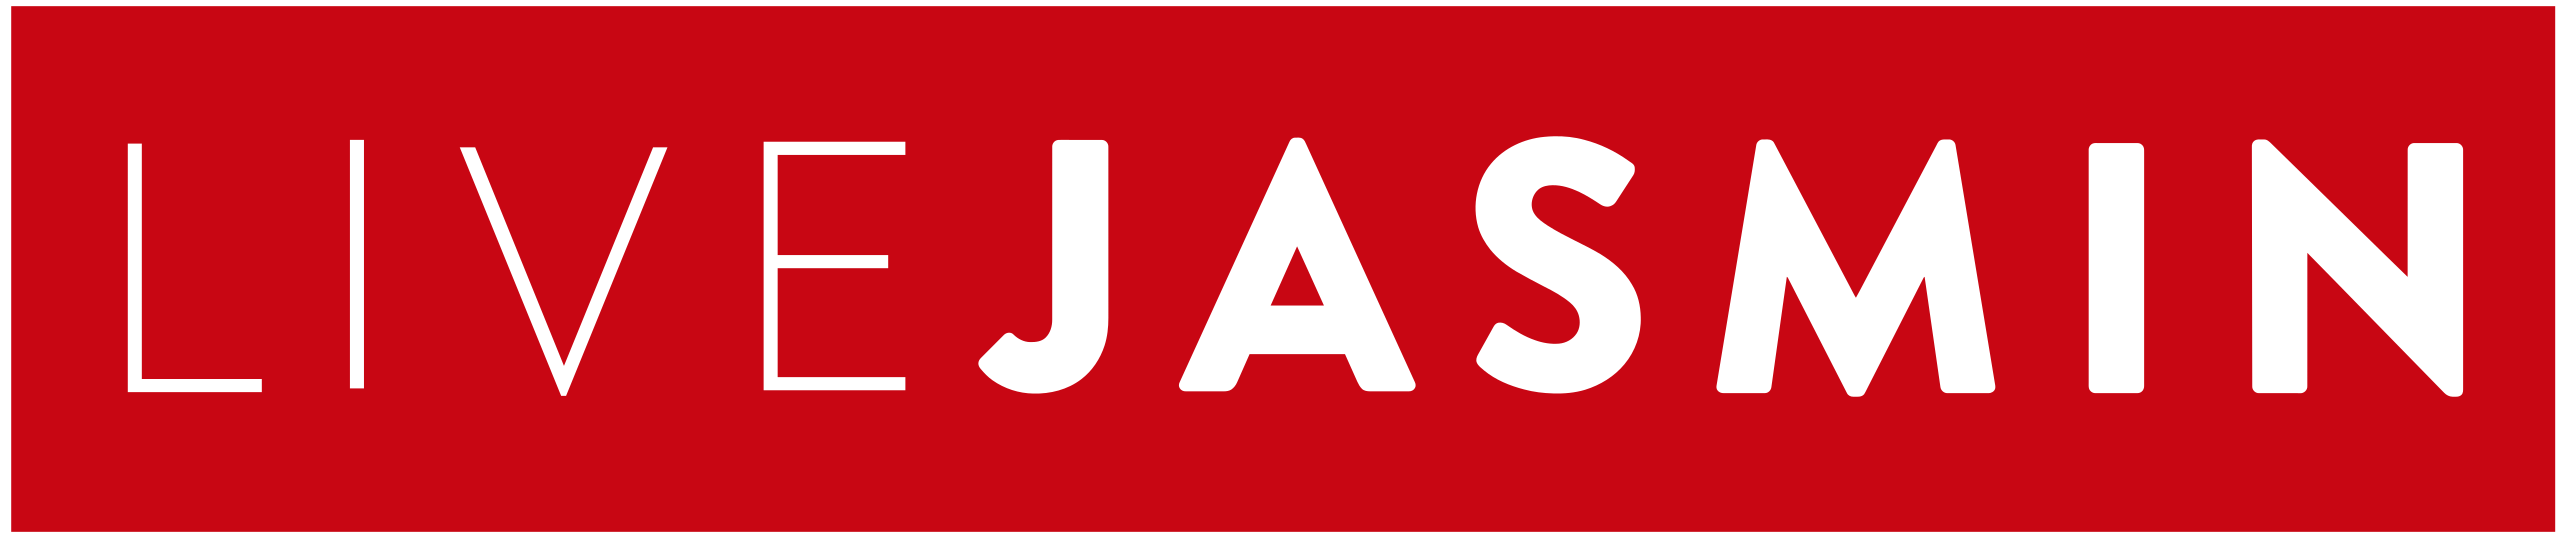 Company logo of LiveJasmin.